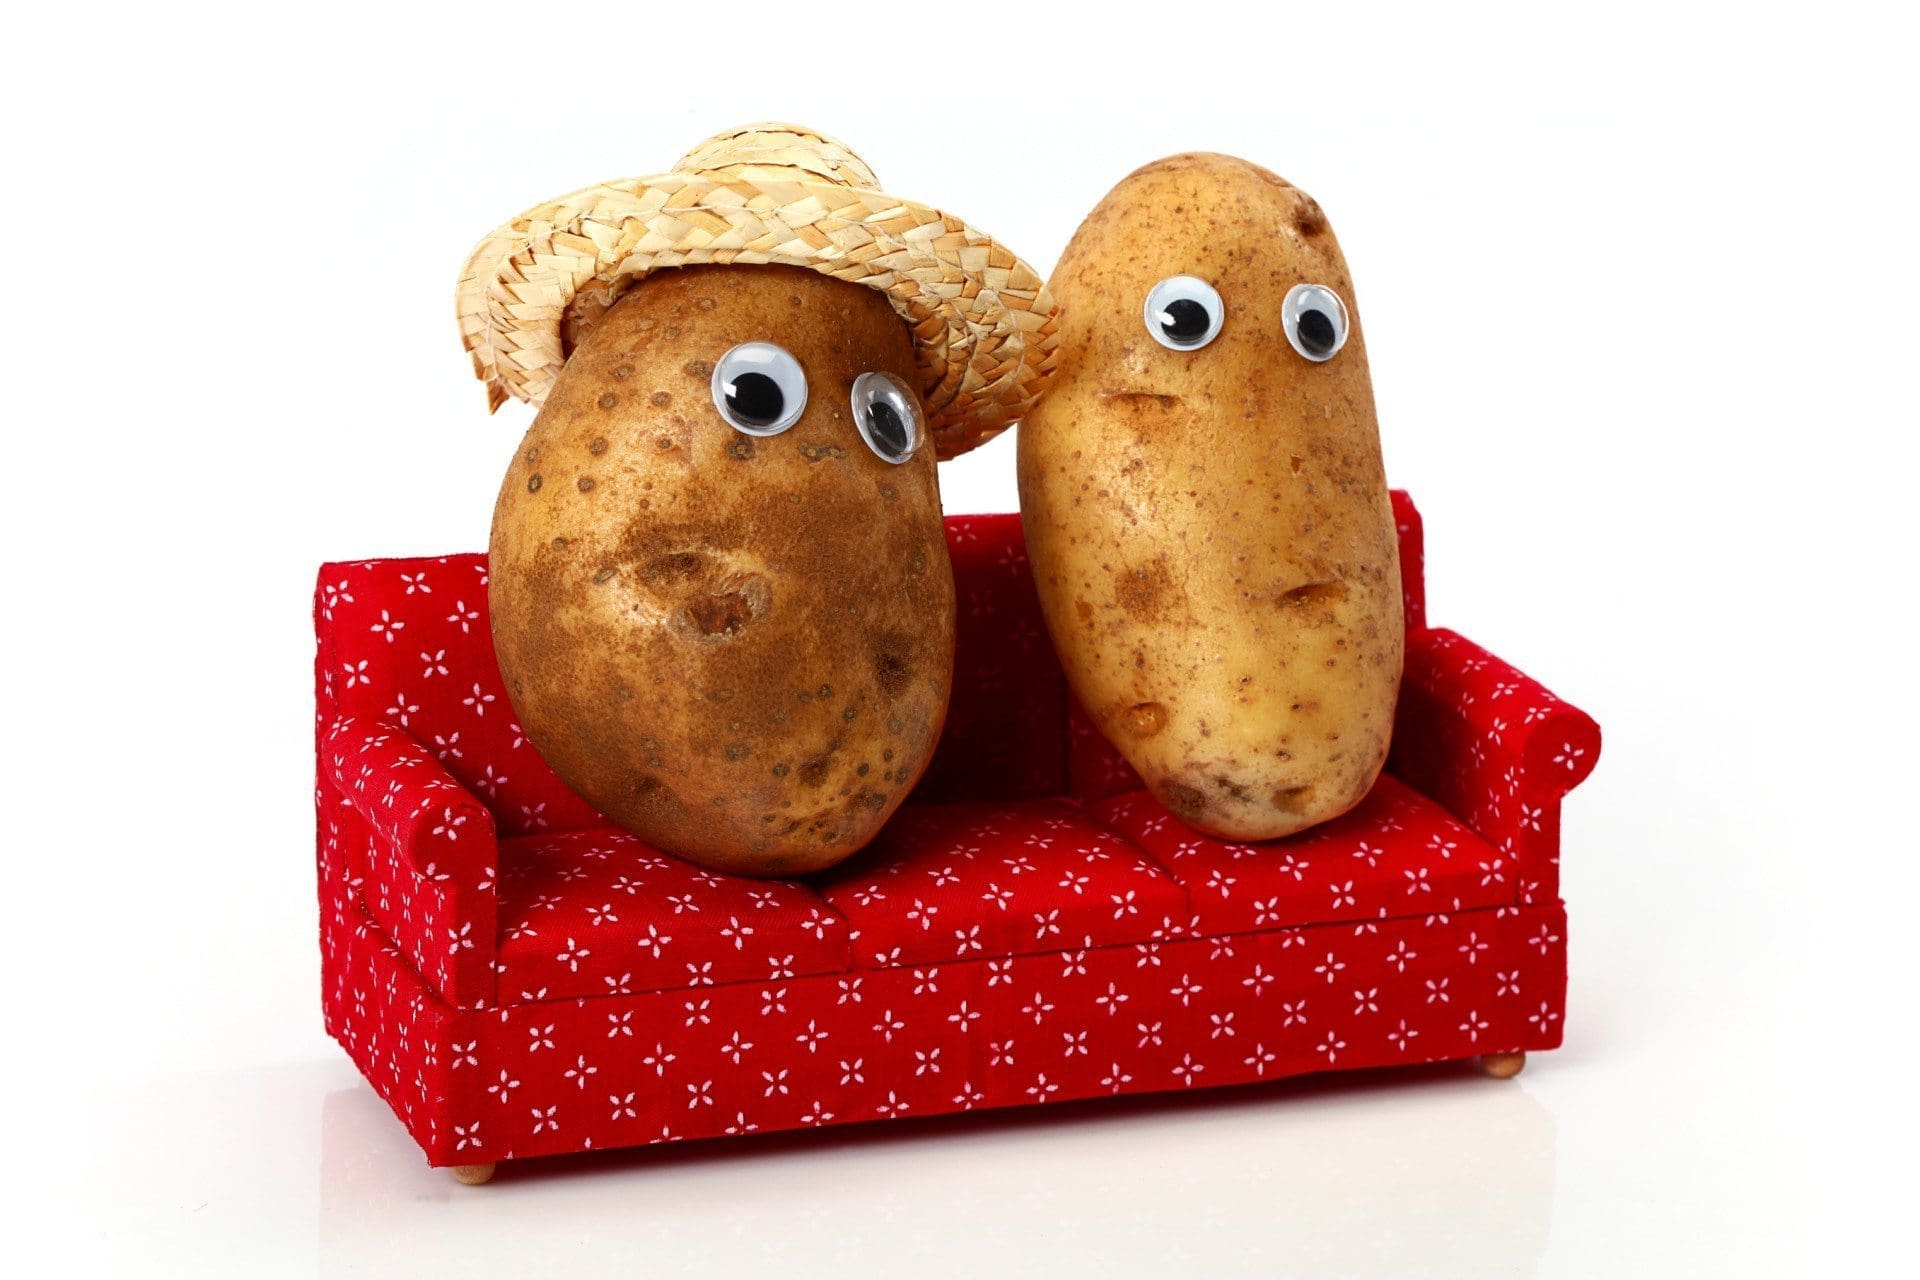 Картошка с глазками. Потейто Потато. Веселая картошка. Картошка с глазами. Глазки картофеля.